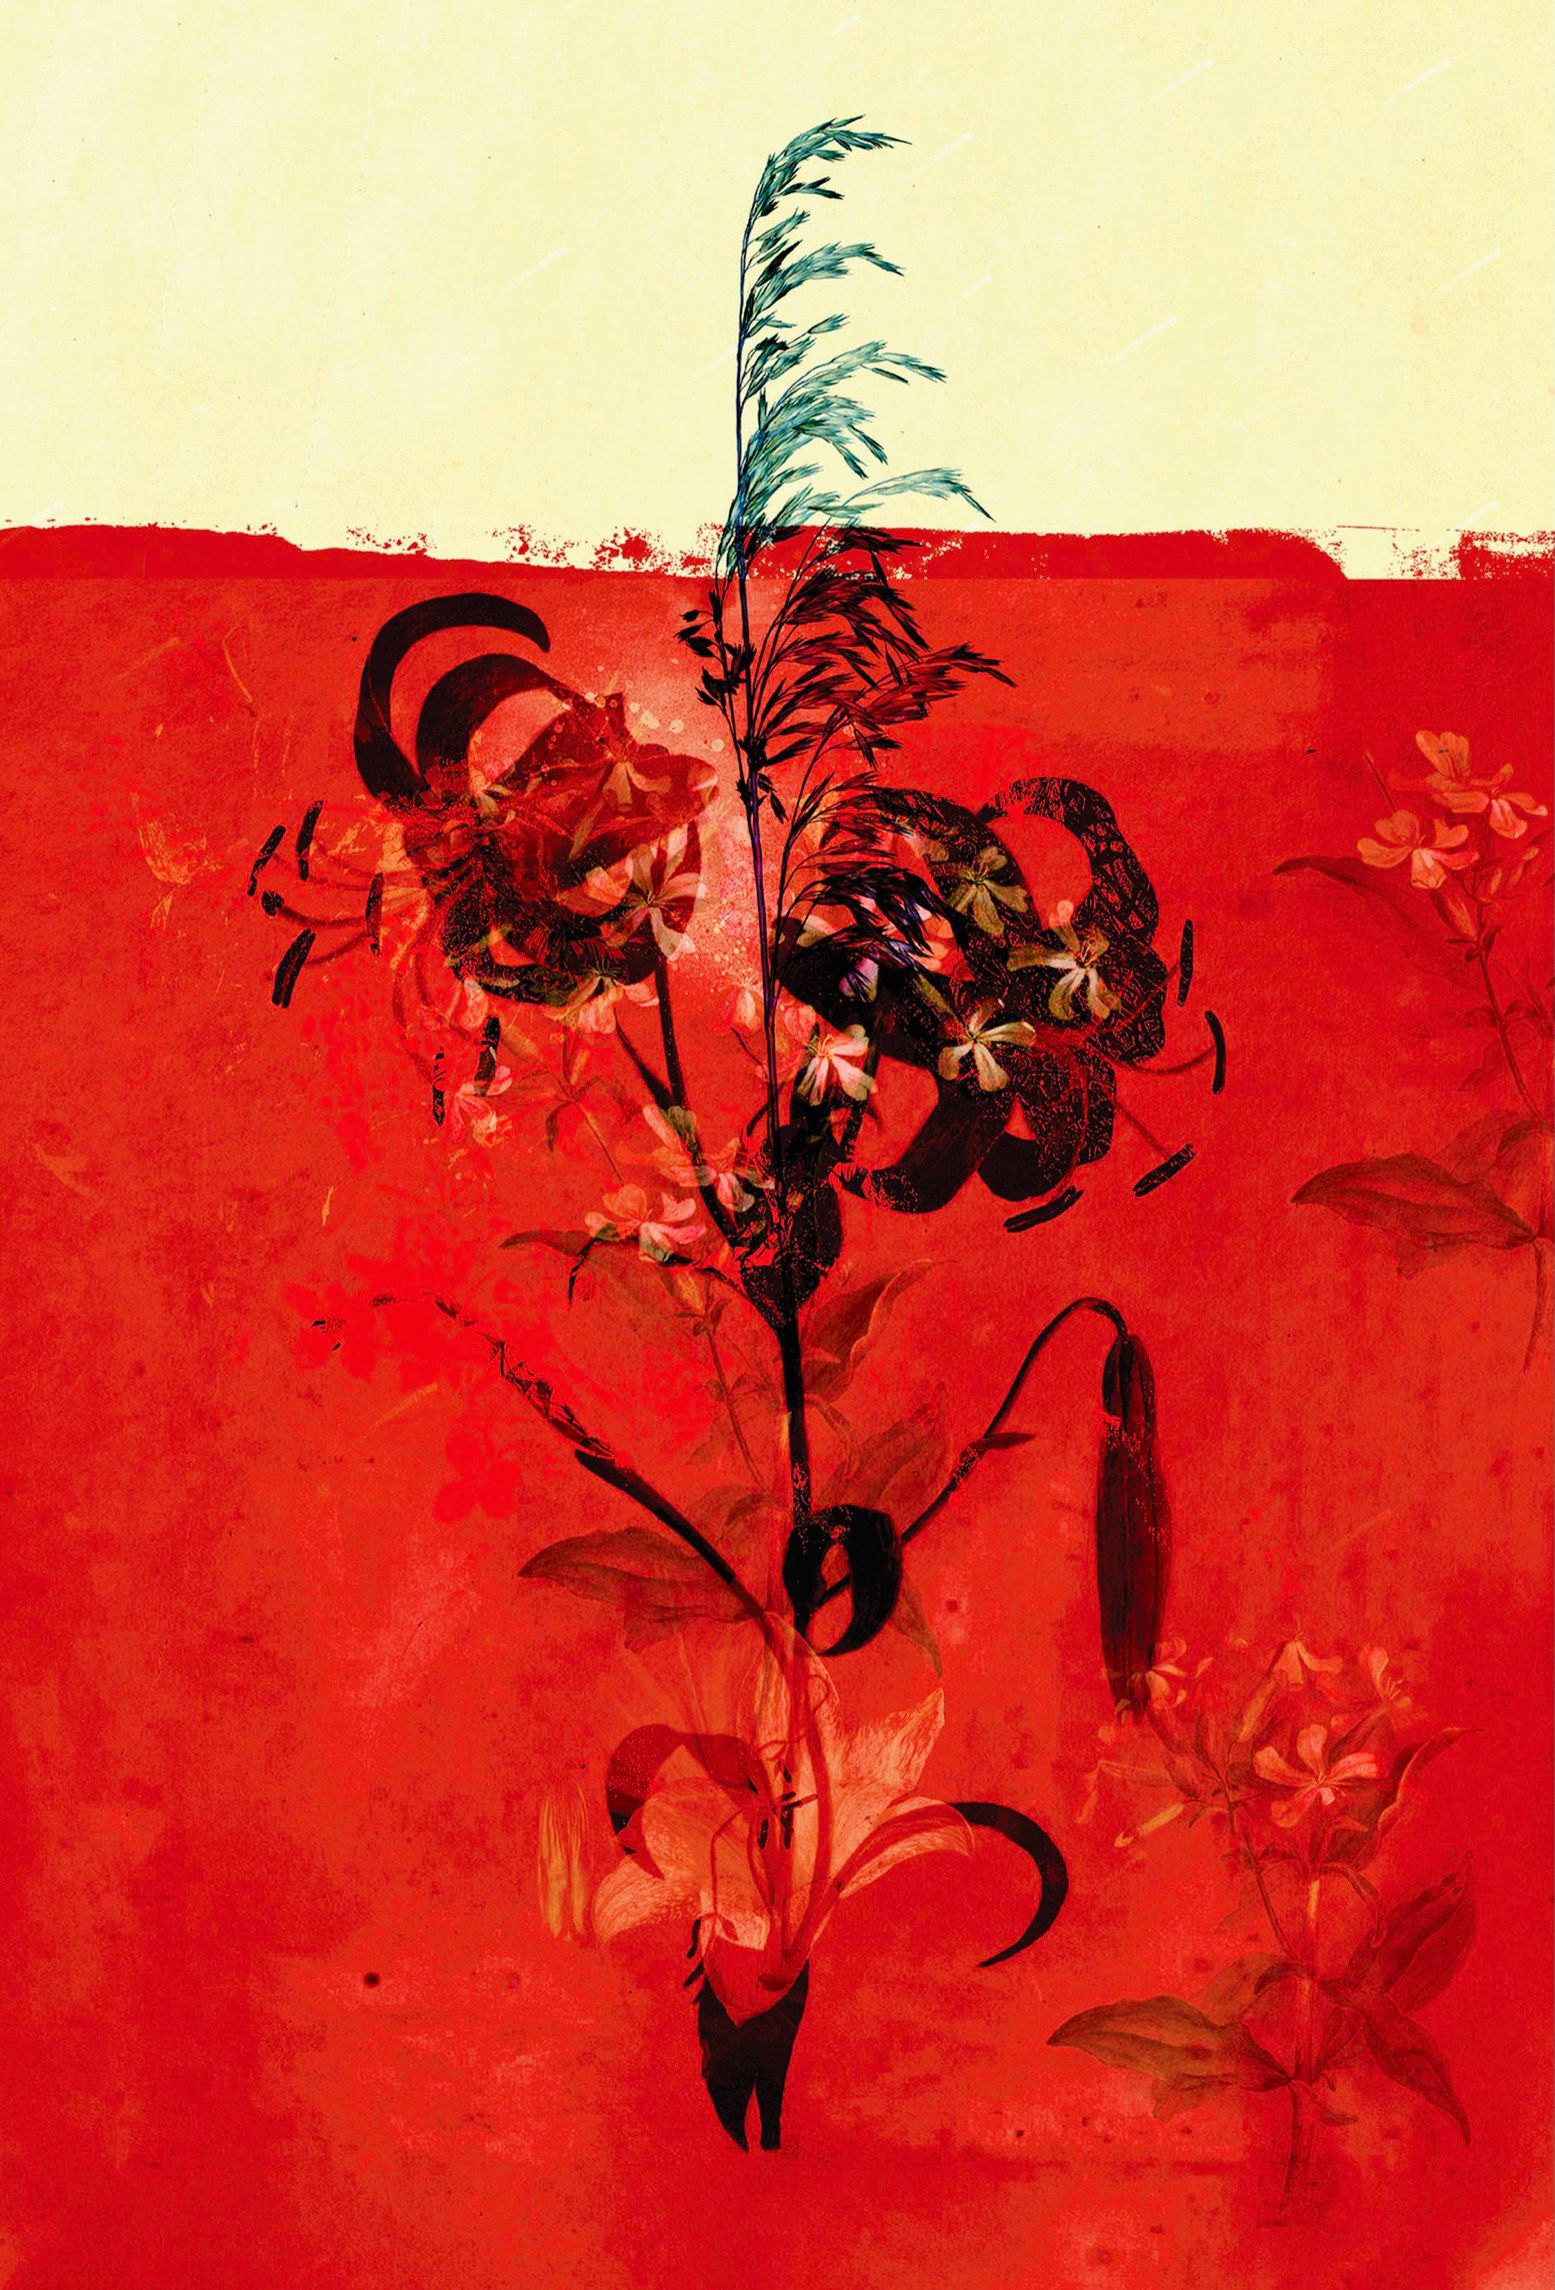 Quadro astratto di Teis Albers Giglio dipinto con vernice rossa